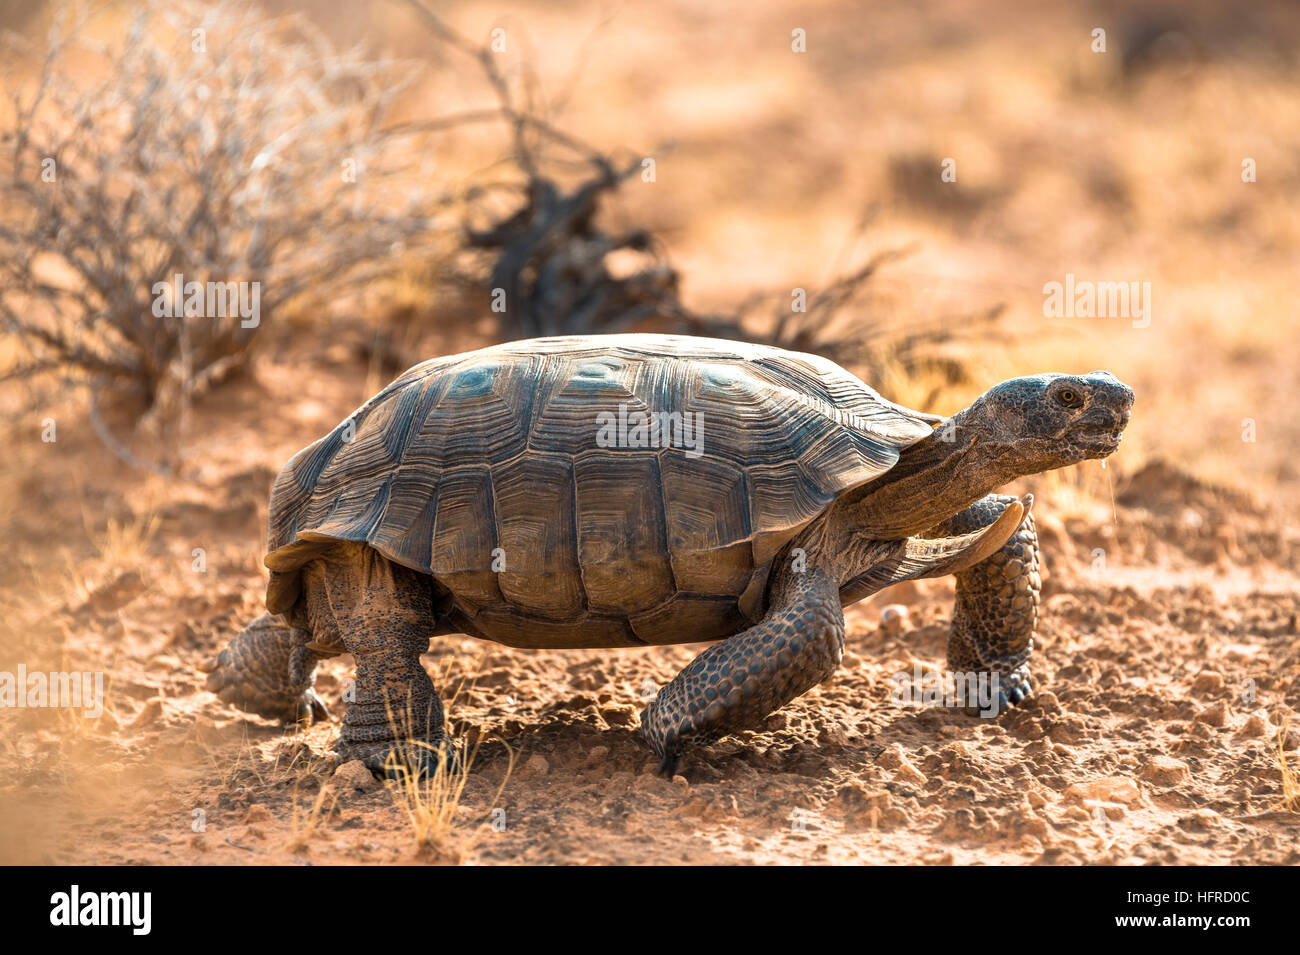 Agassiz's desert tortoise (Gopherus agassizii) walking in dry terrain, Valley of Fire, Mojave Desert, Nevada, USA Stock Photo